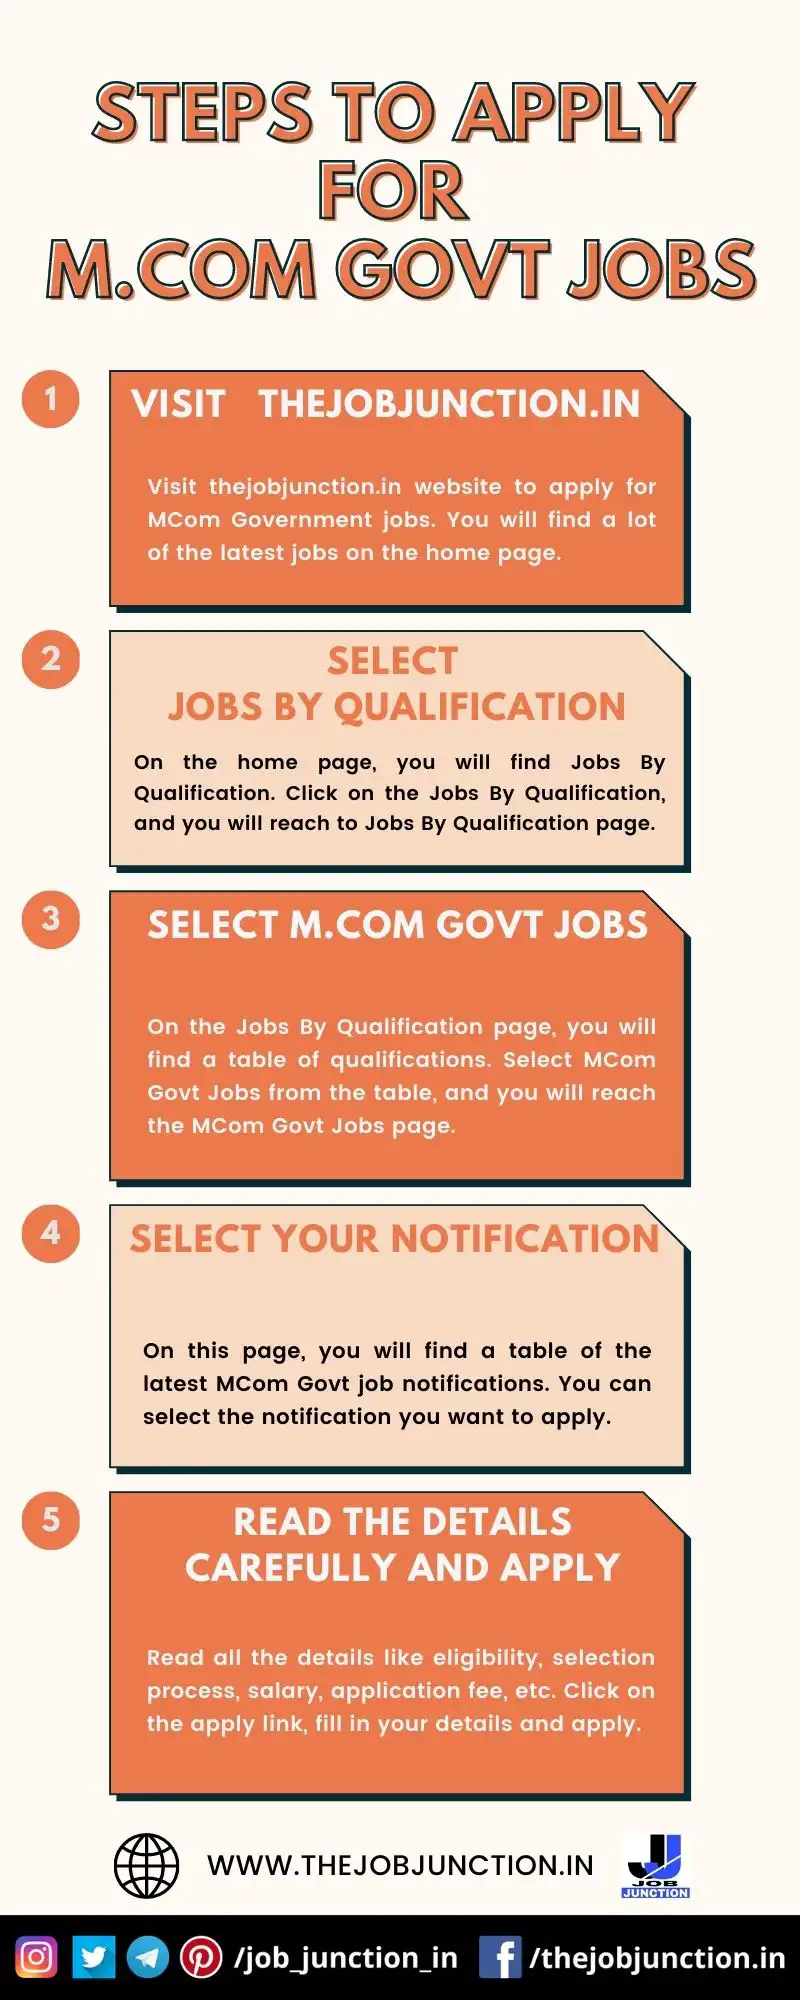 STEPS TO APPLY FOR MCOM GOVT JOBS